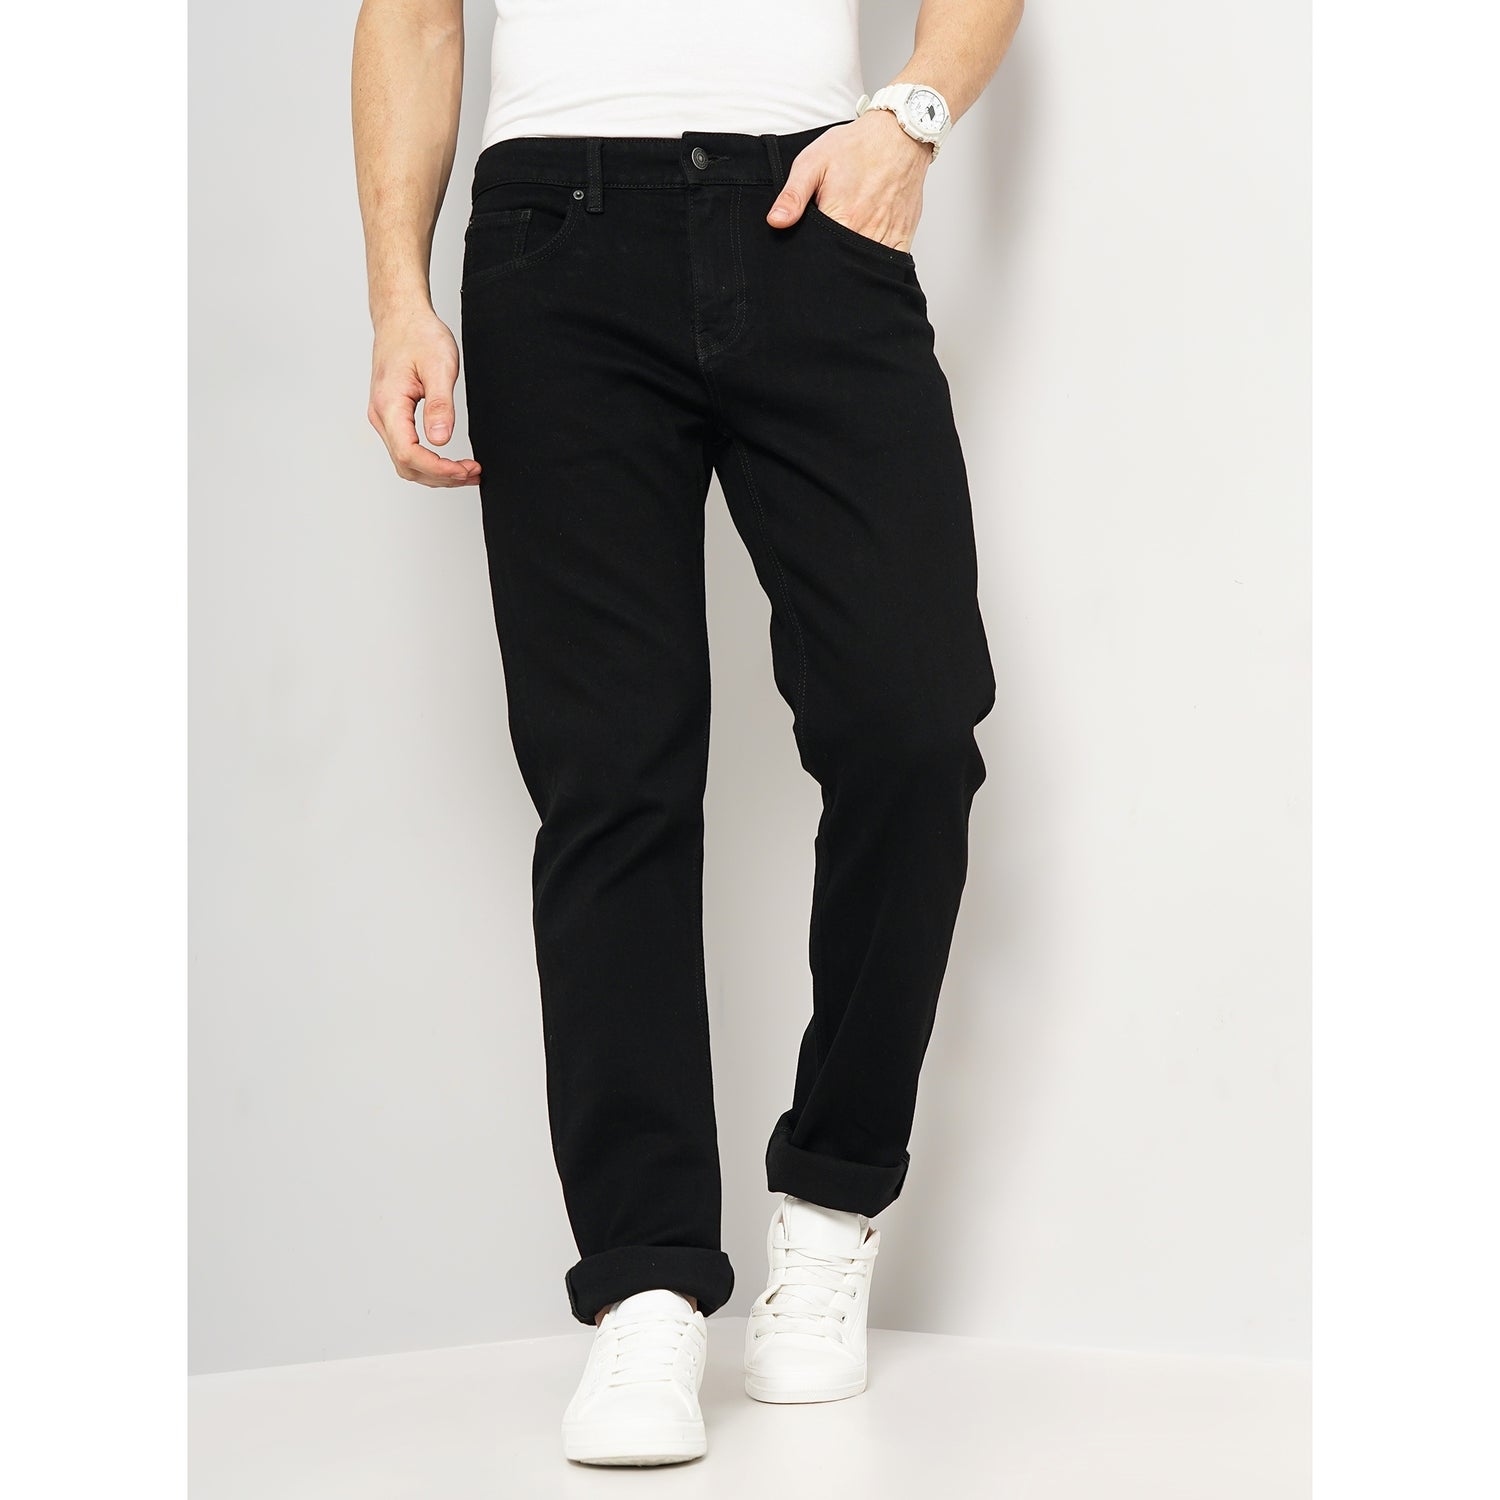 Men Black Straight Fit Cotton Twill Denim Jeans (STRAIGHT3L)